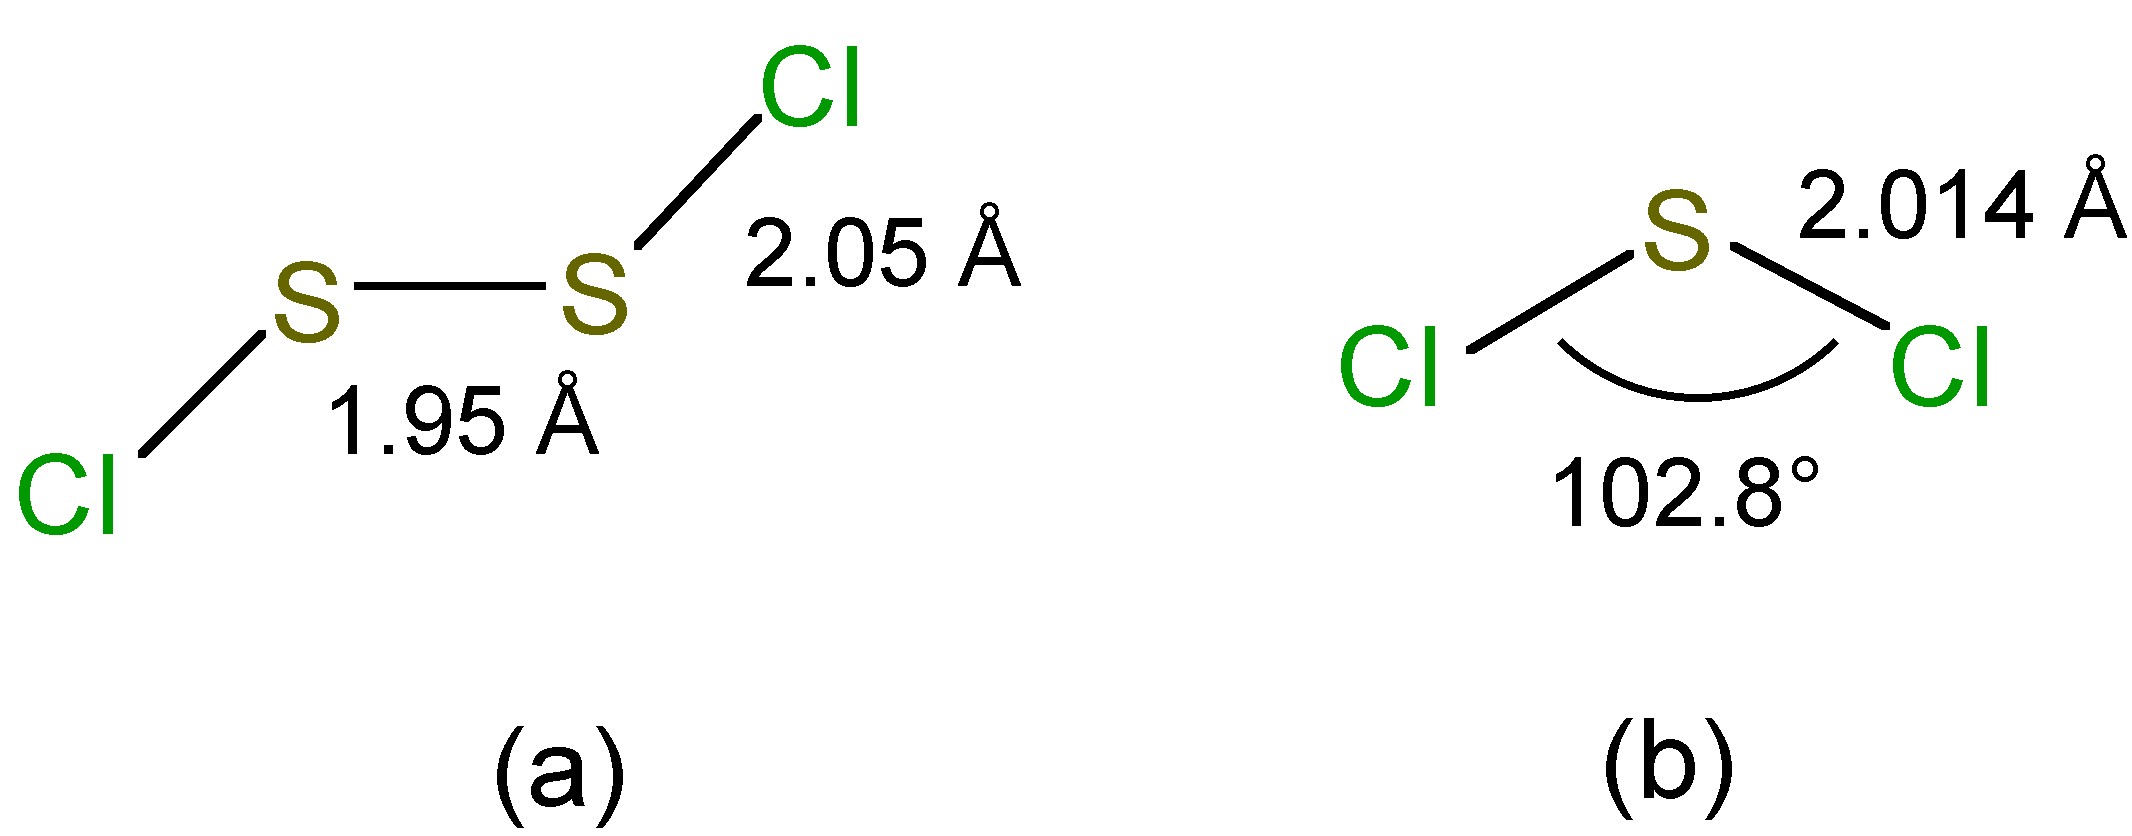 Строение вещества cl2